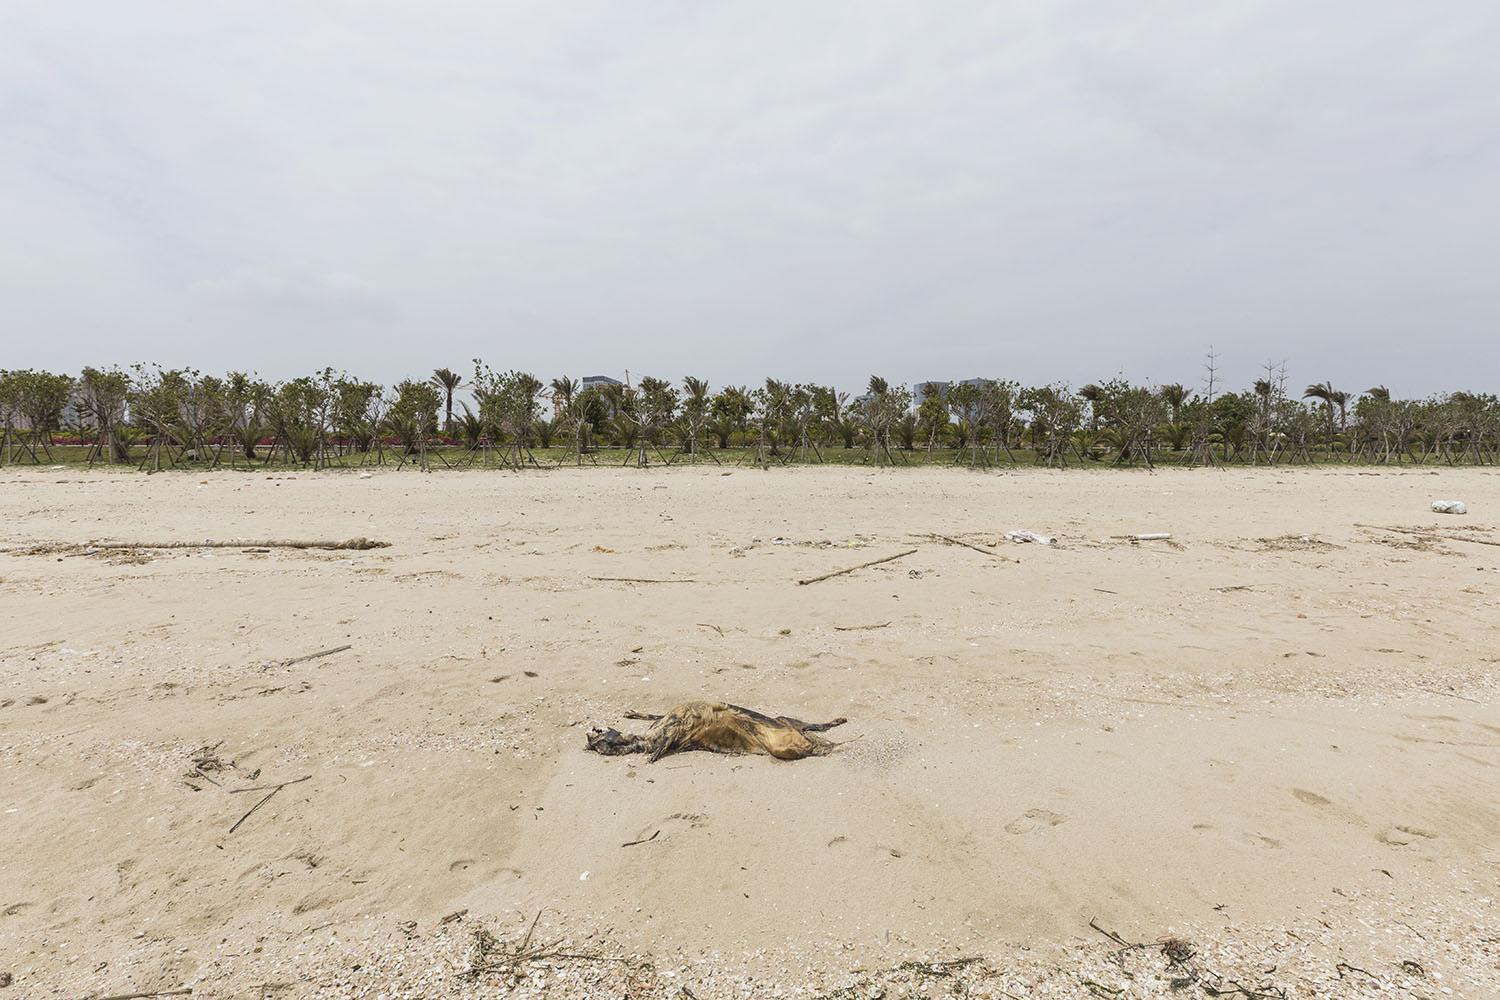 A decomposing animal carcass at Guanyinshan Fantasy Beach. Xiamen, China. 2018.